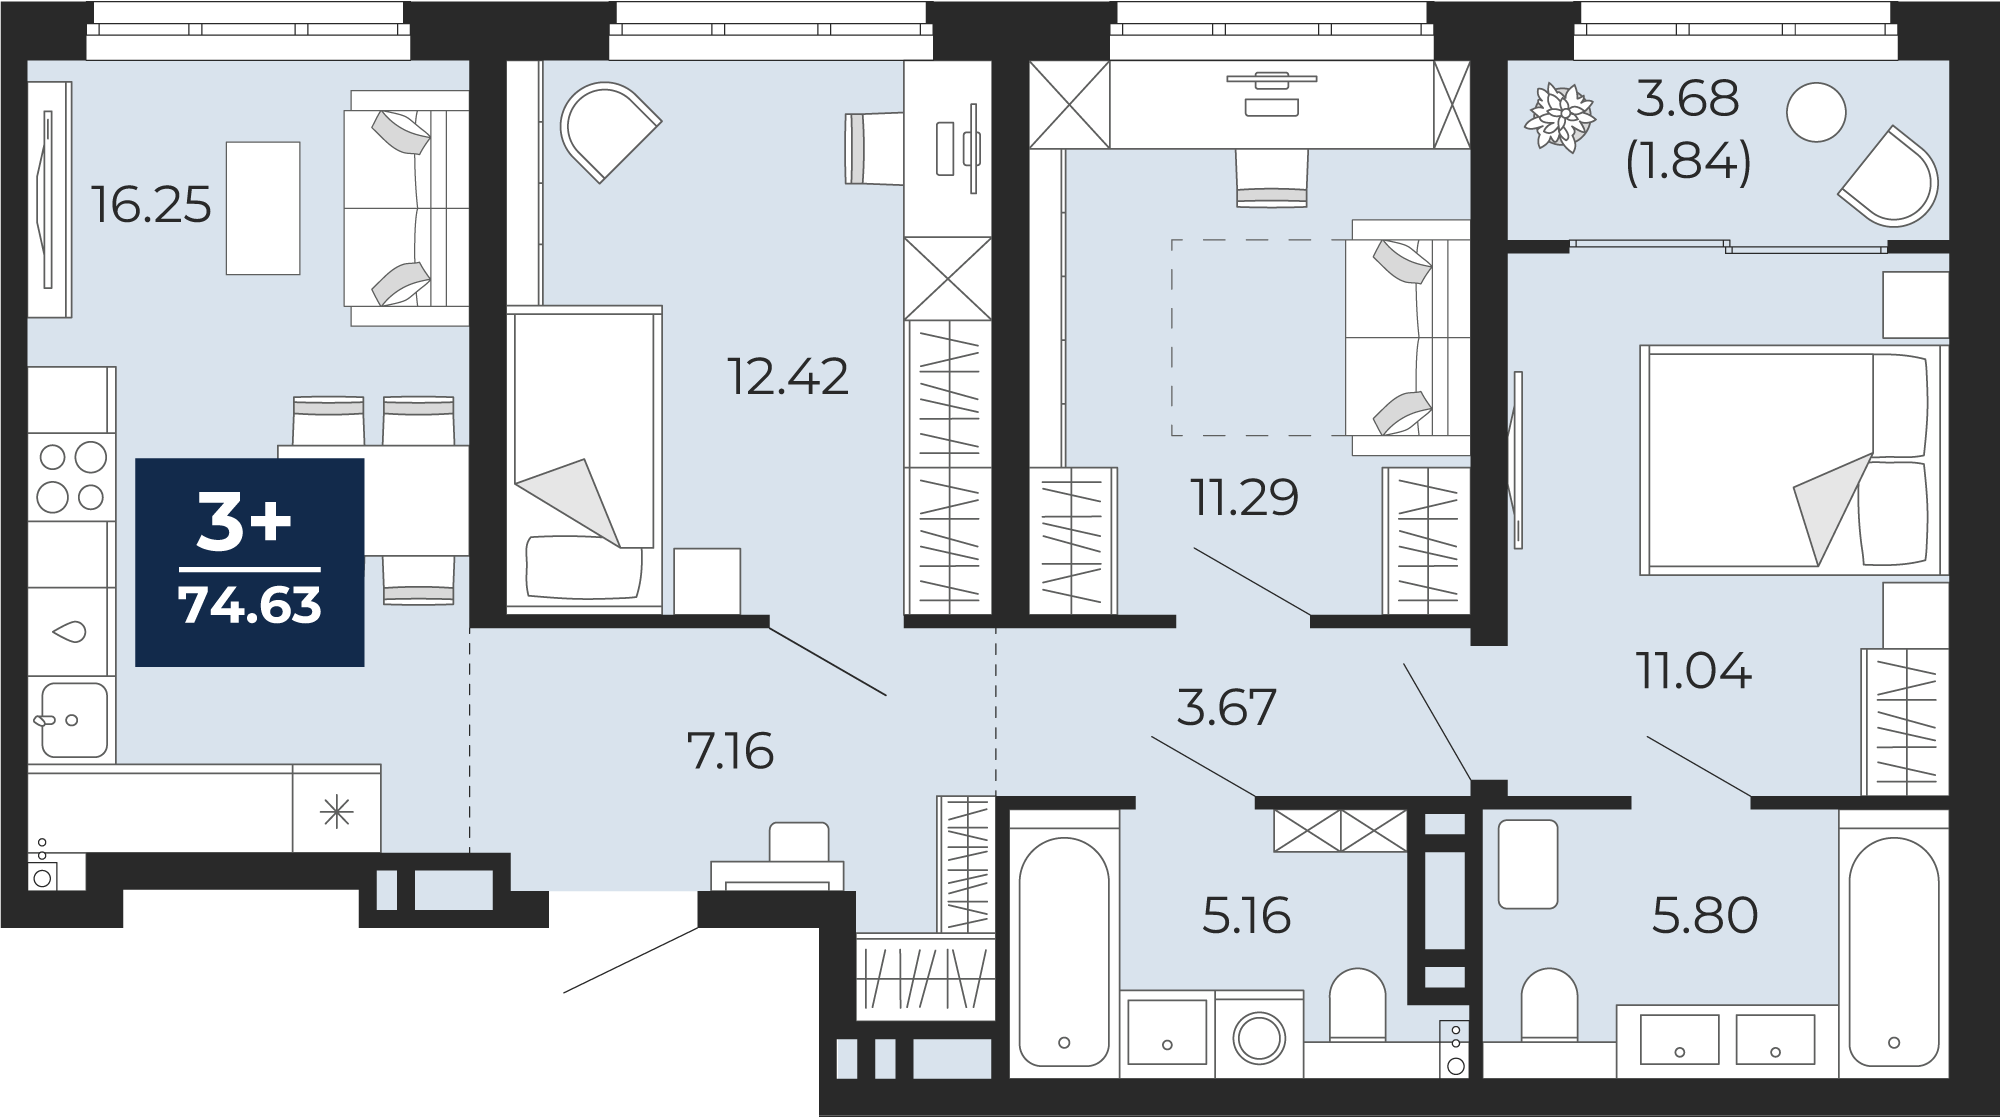 Квартира № 224, 3-комнатная, 74.63 кв. м, 4 этаж